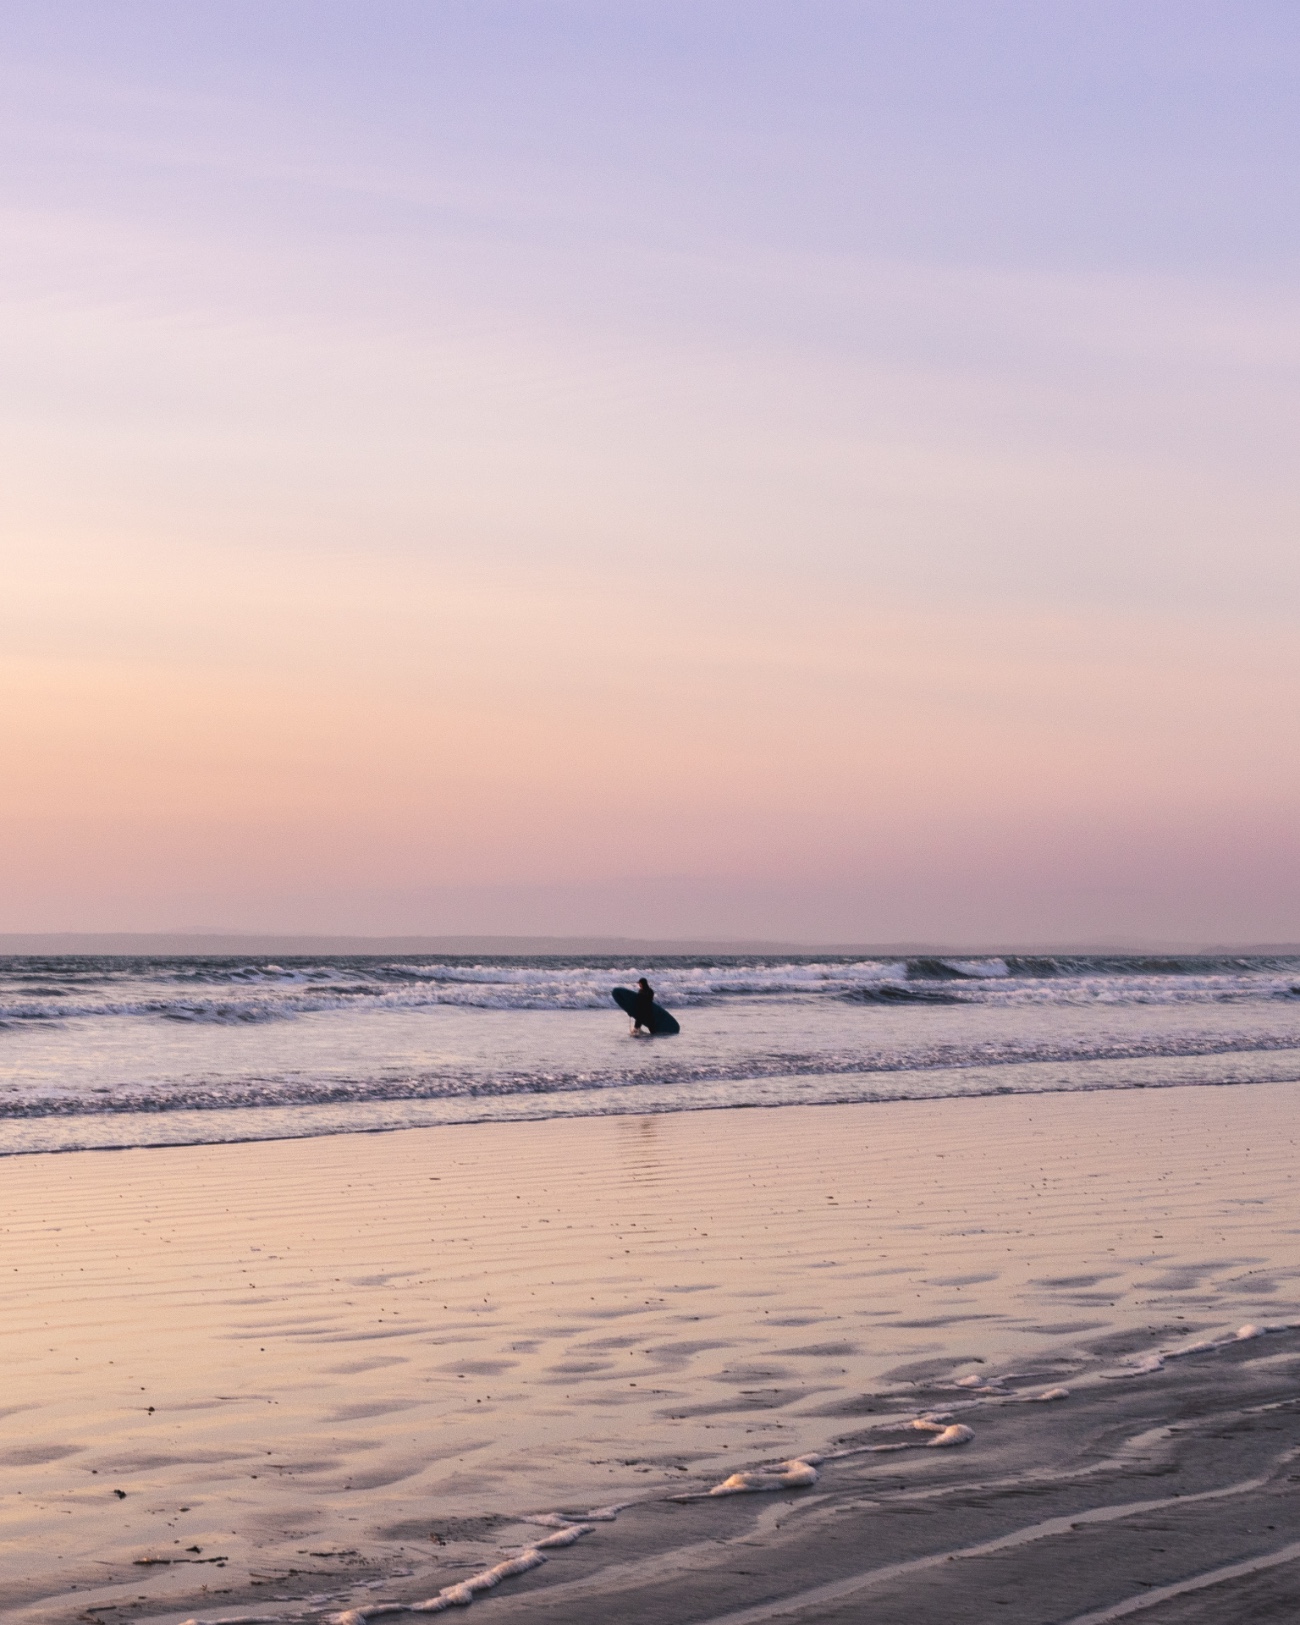 صورة لراكب أمواج وحيد بعيد يقف في أمواج لطيفة على الشاطئ.